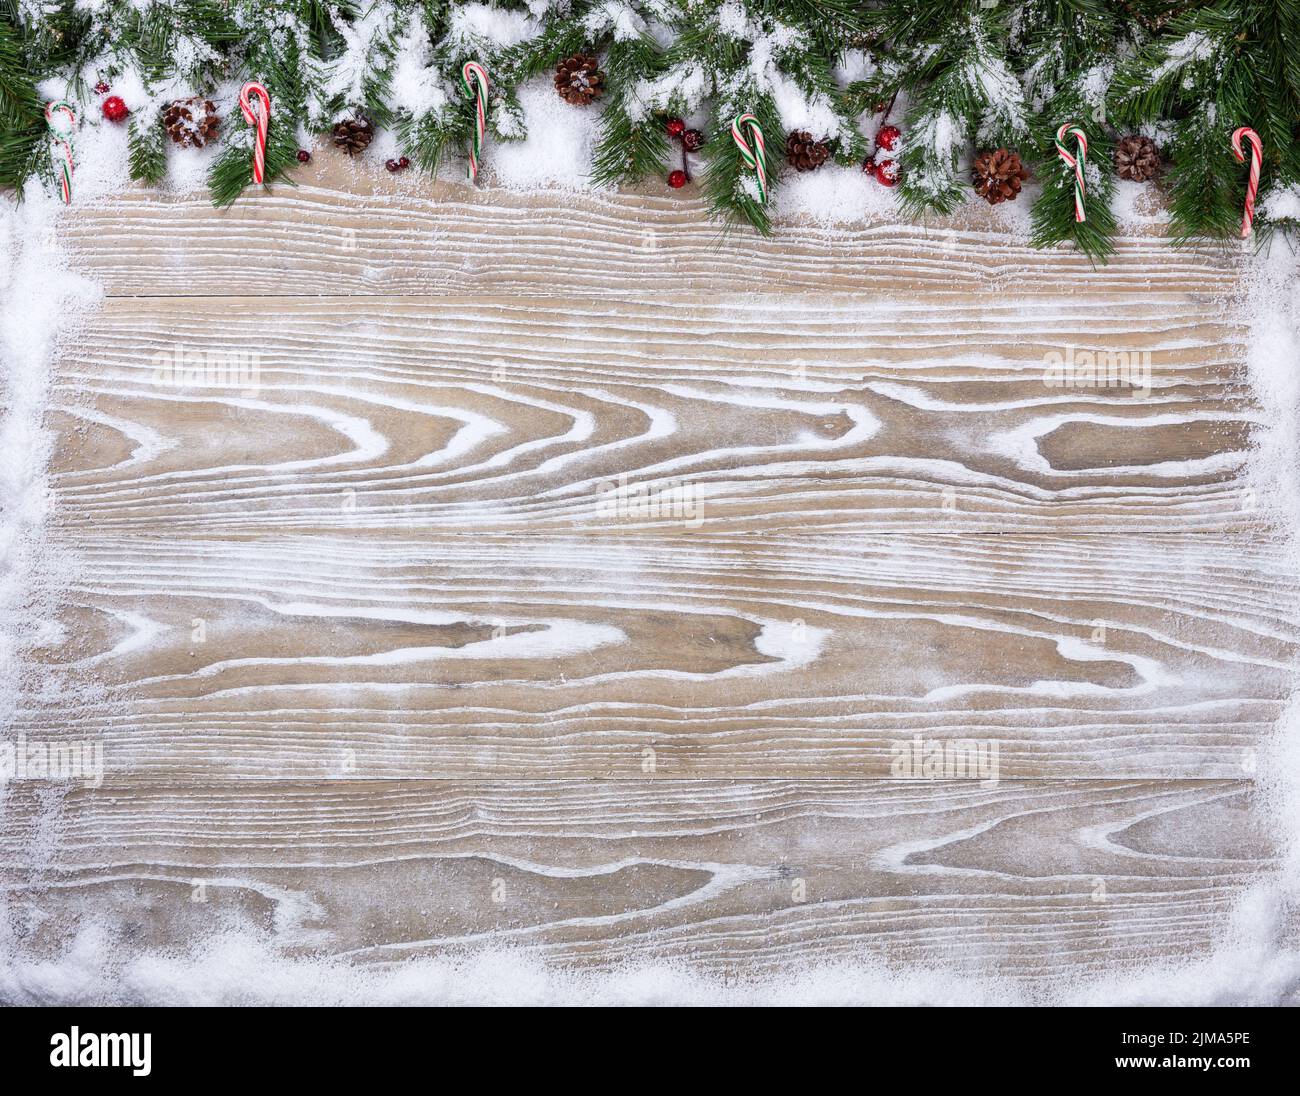 Rustiques bois blanc avec branches de sapin enneigé pour la saison de Noël concept Banque D'Images